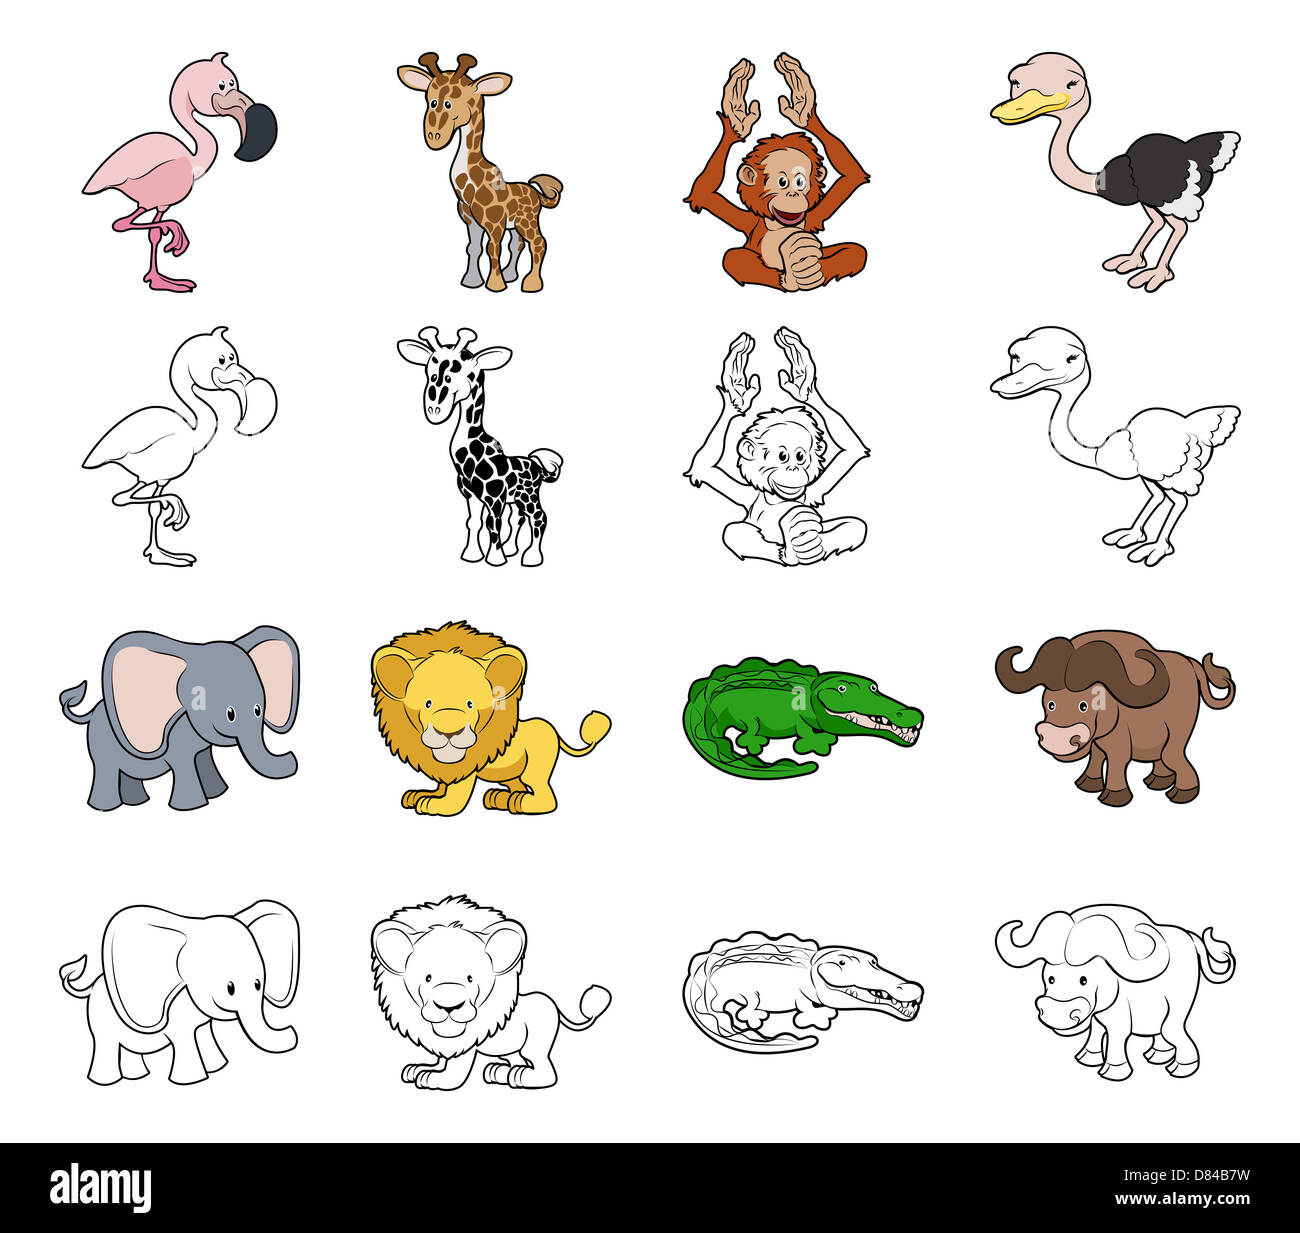 Descarga Vector De Animales De Dibujos Animados En La Ilustración De La  Selva